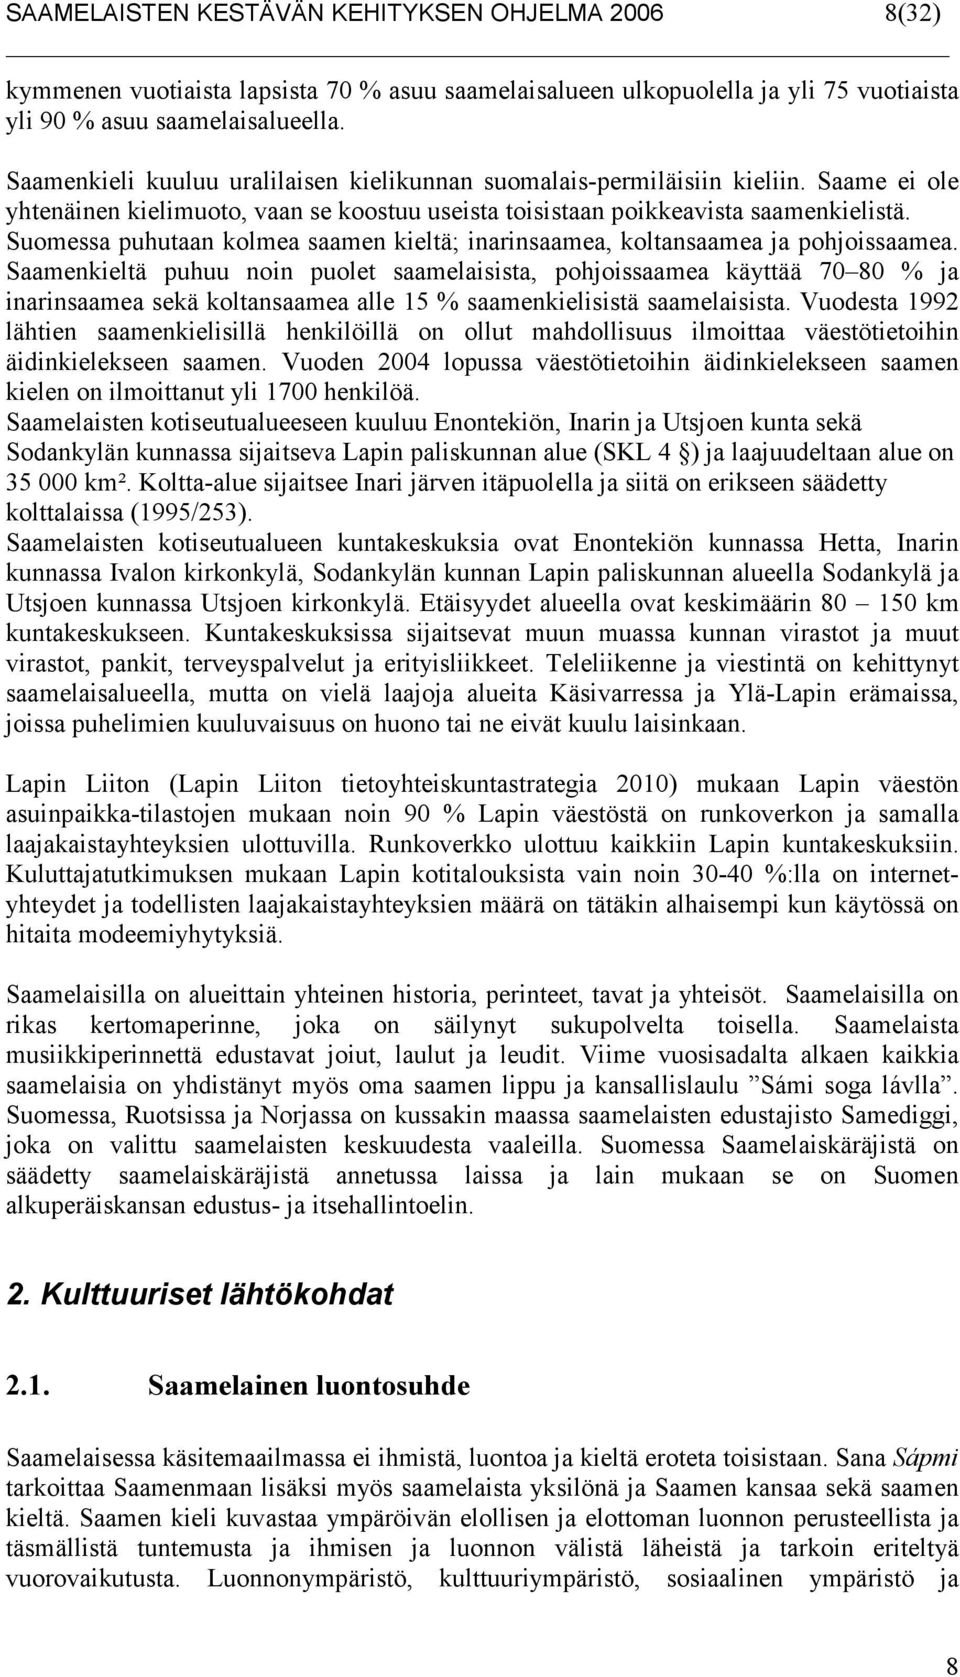 Suomessa puhutaan kolmea saamen kieltä; inarinsaamea, koltansaamea ja pohjoissaamea.